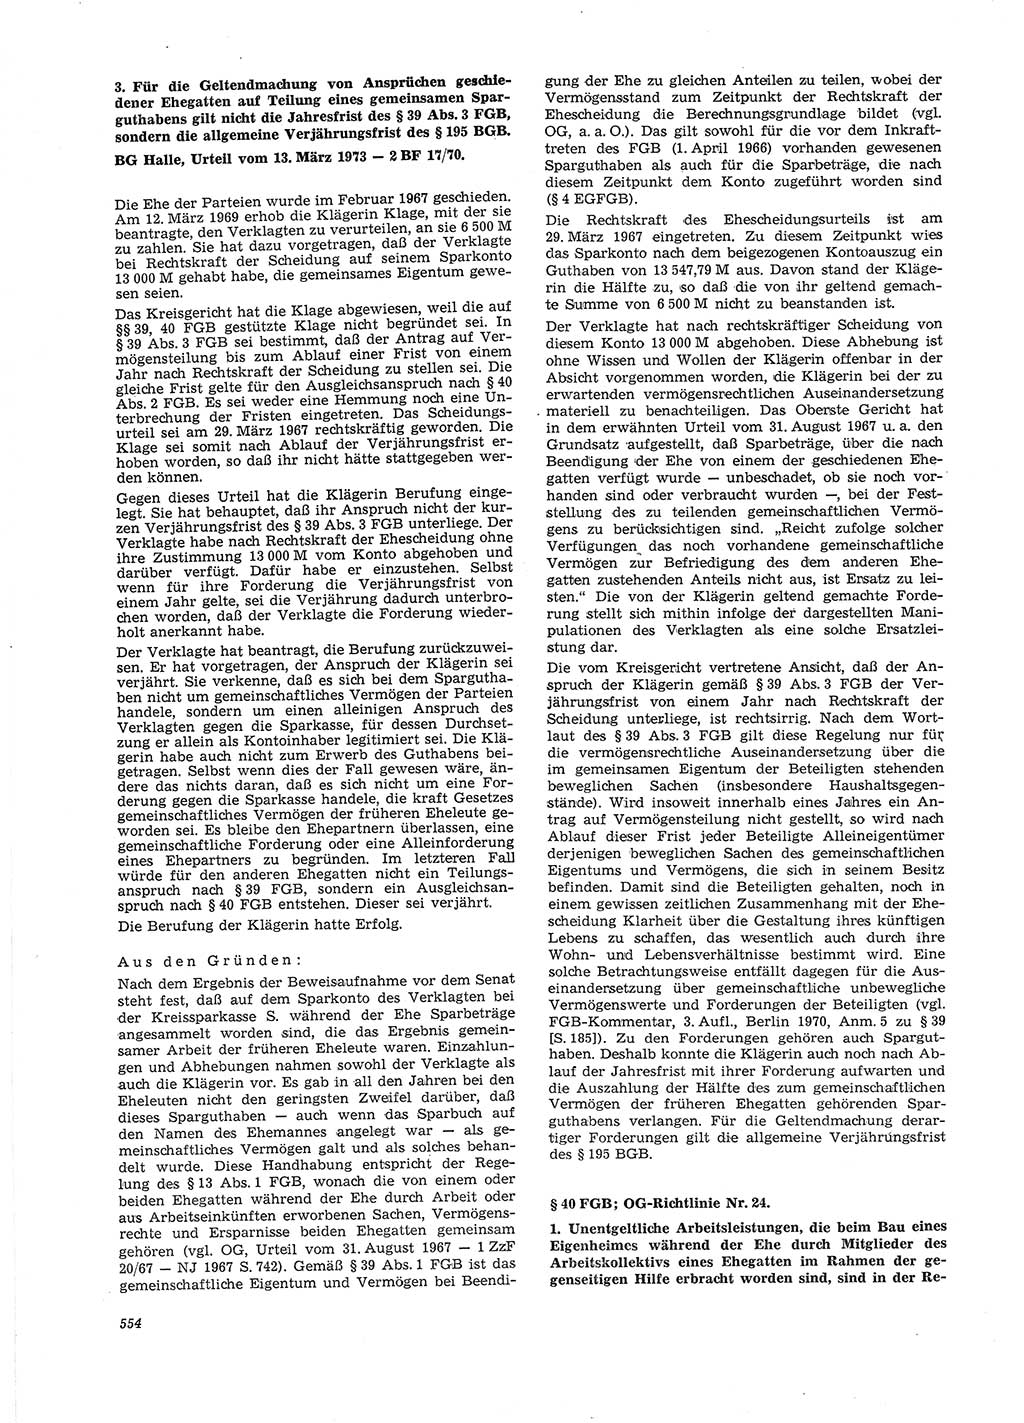 Neue Justiz (NJ), Zeitschrift für Recht und Rechtswissenschaft [Deutsche Demokratische Republik (DDR)], 27. Jahrgang 1973, Seite 554 (NJ DDR 1973, S. 554)